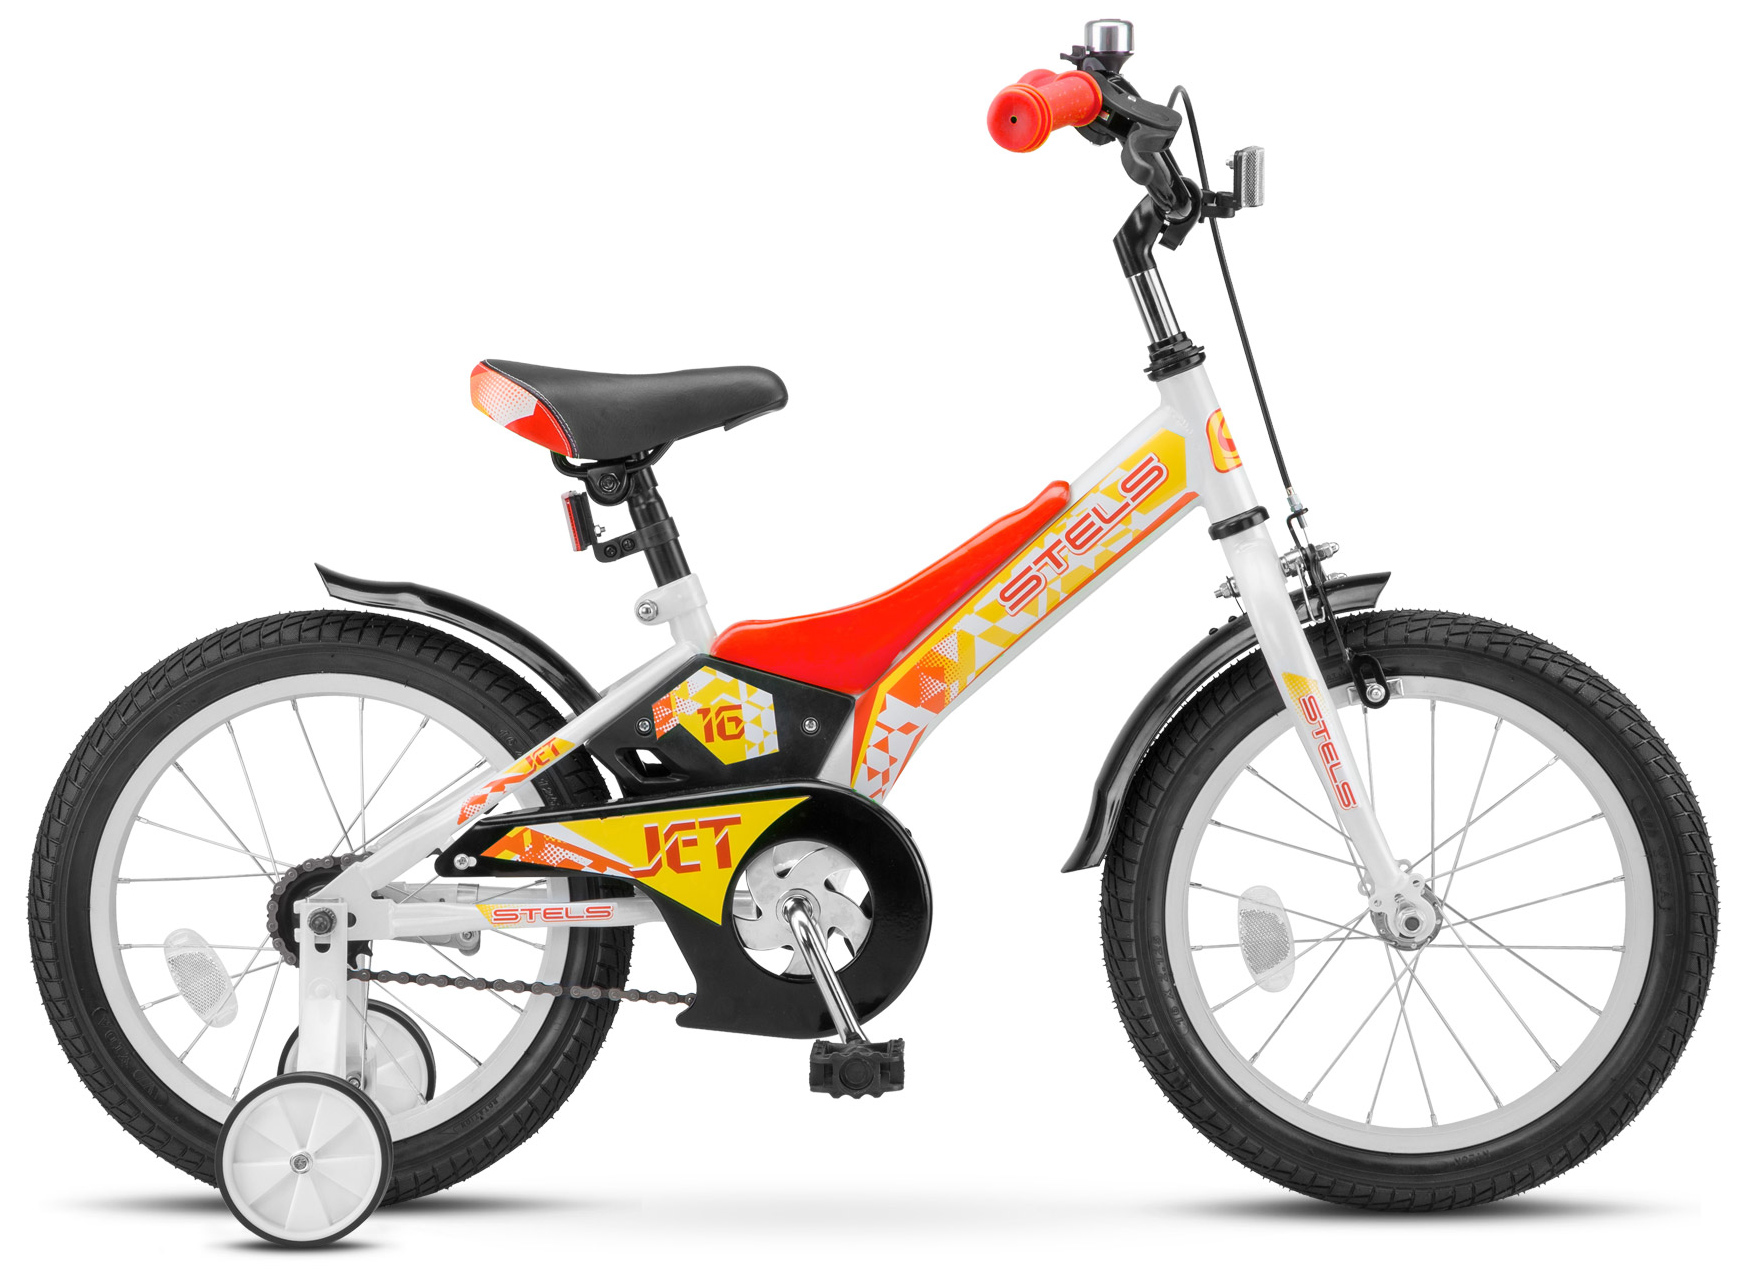  Отзывы о Детском велосипеде Stels Jet 16" (Z010) 2019